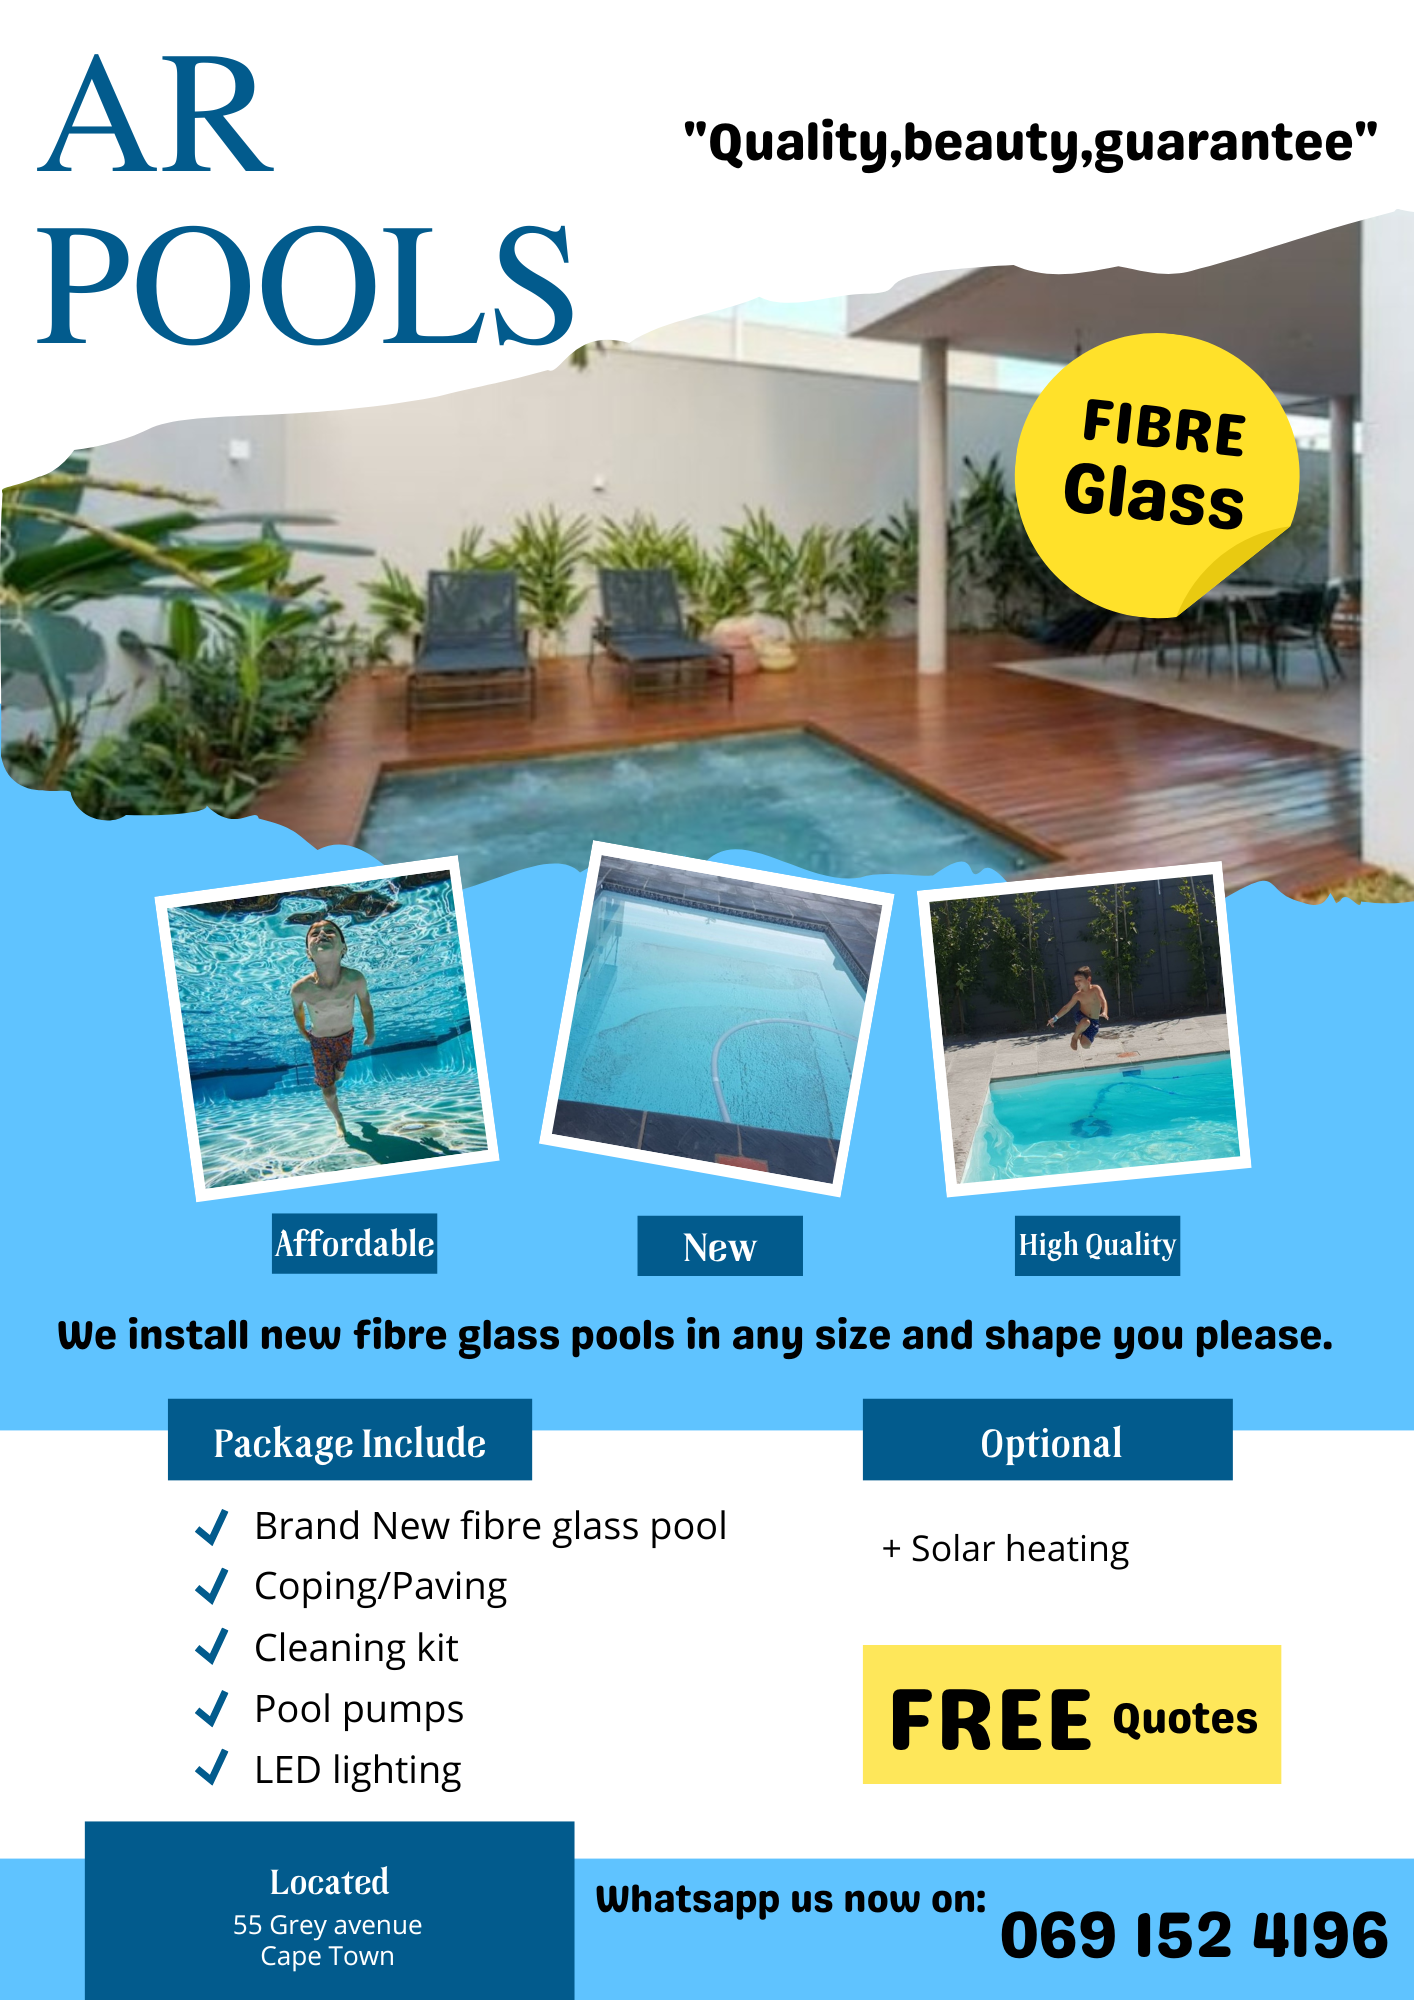 New Fibre Glass Pools installation! 